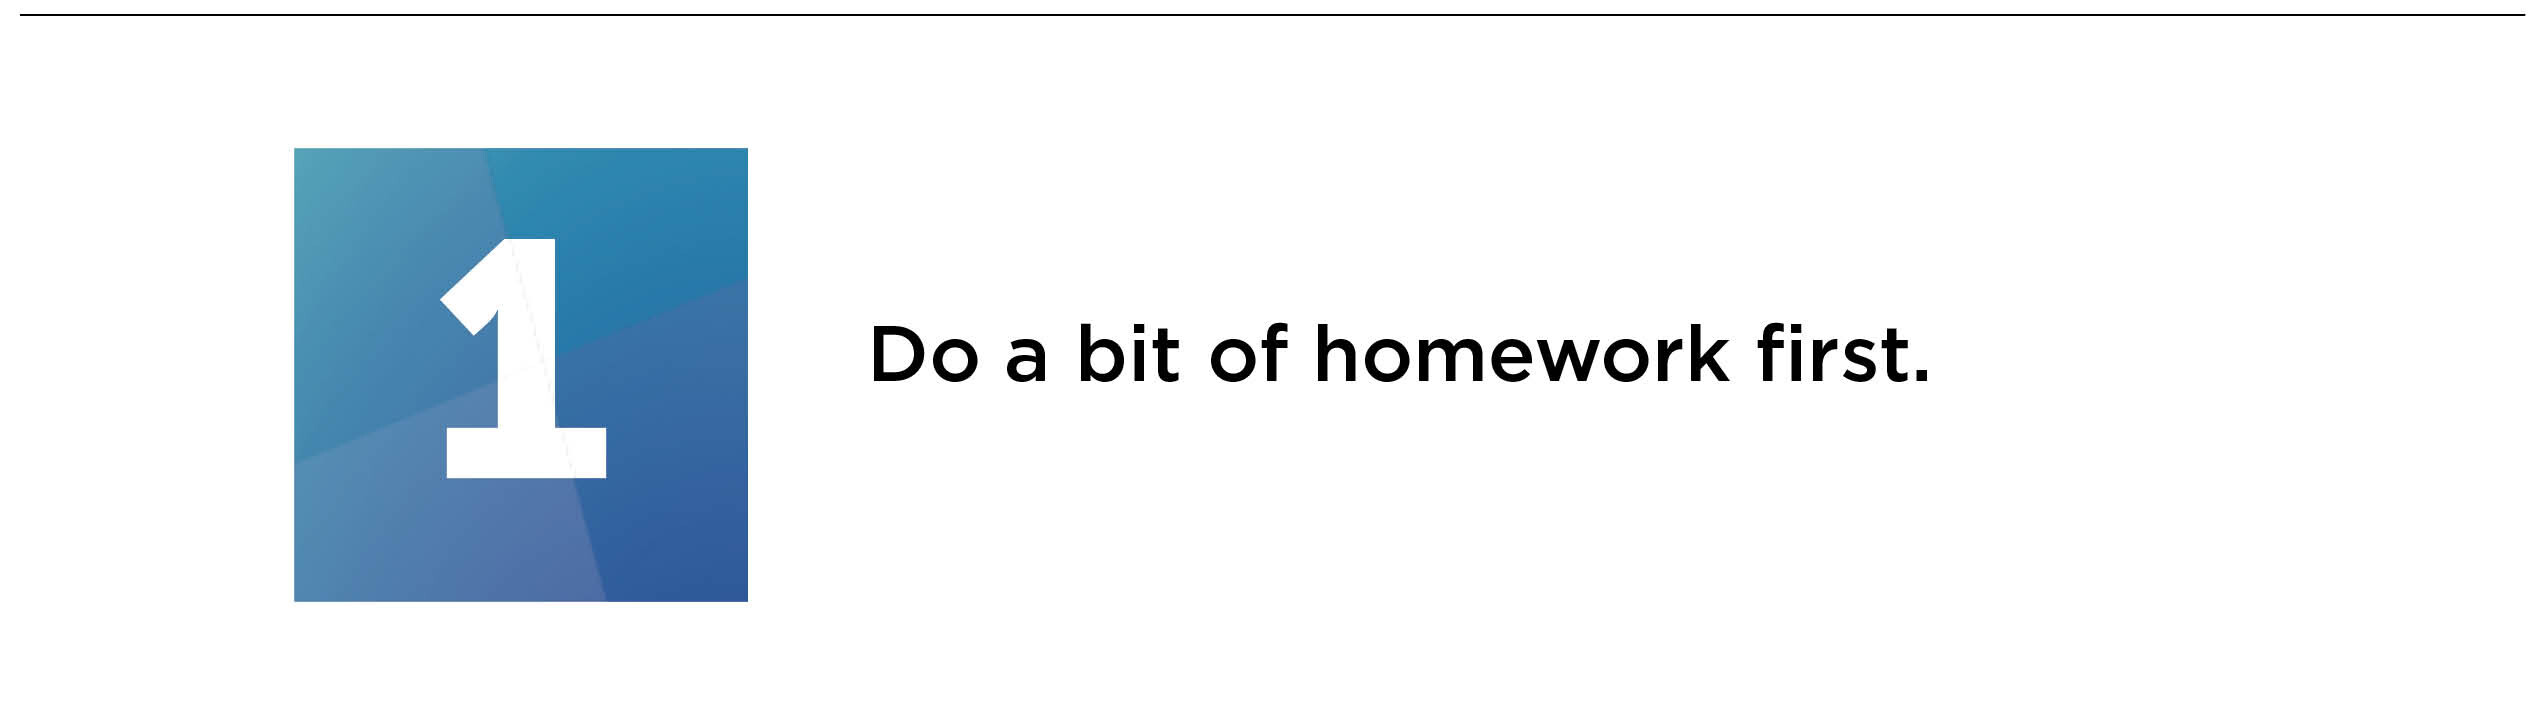 do a bit of homework first